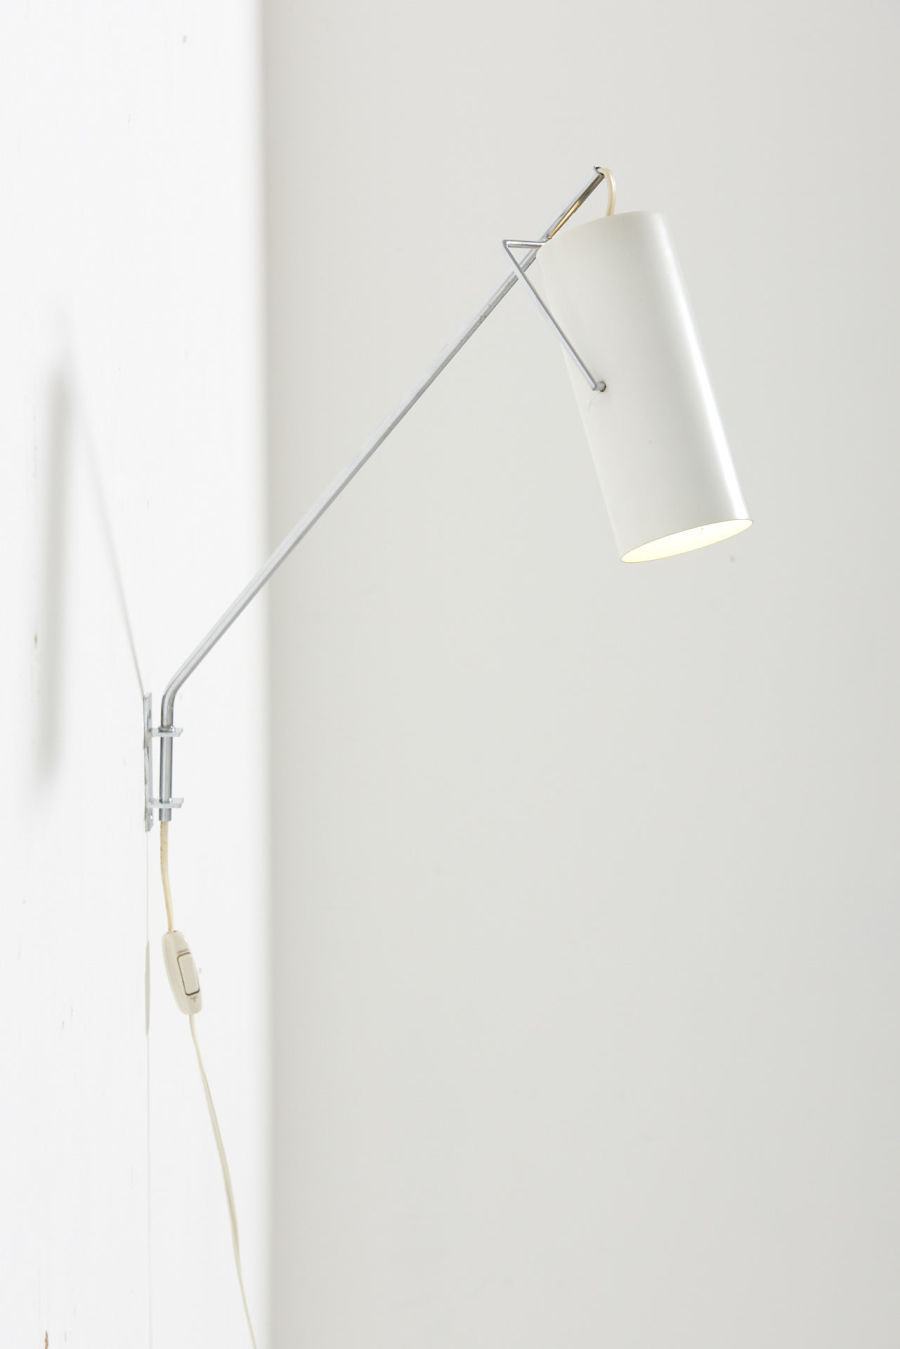 modestfurniture-vintage-2876-raak-swing-arm-wall-lamp-model-model-c1582-3708